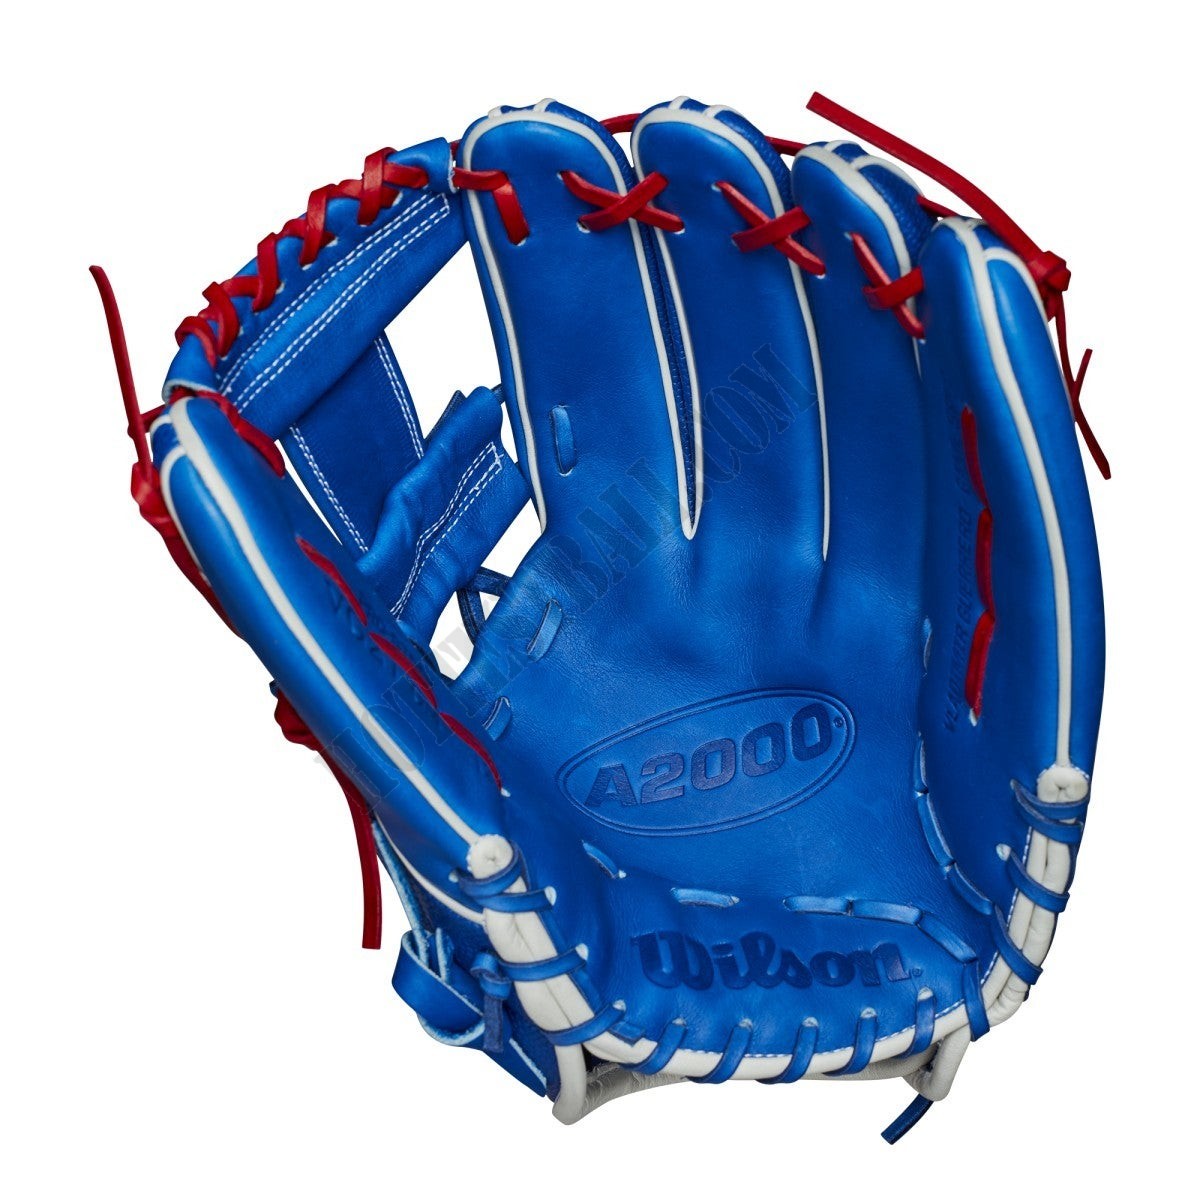 2021 A2000 VG27 GM 12.25" Infield Baseball Glove ● Wilson Promotions - -2